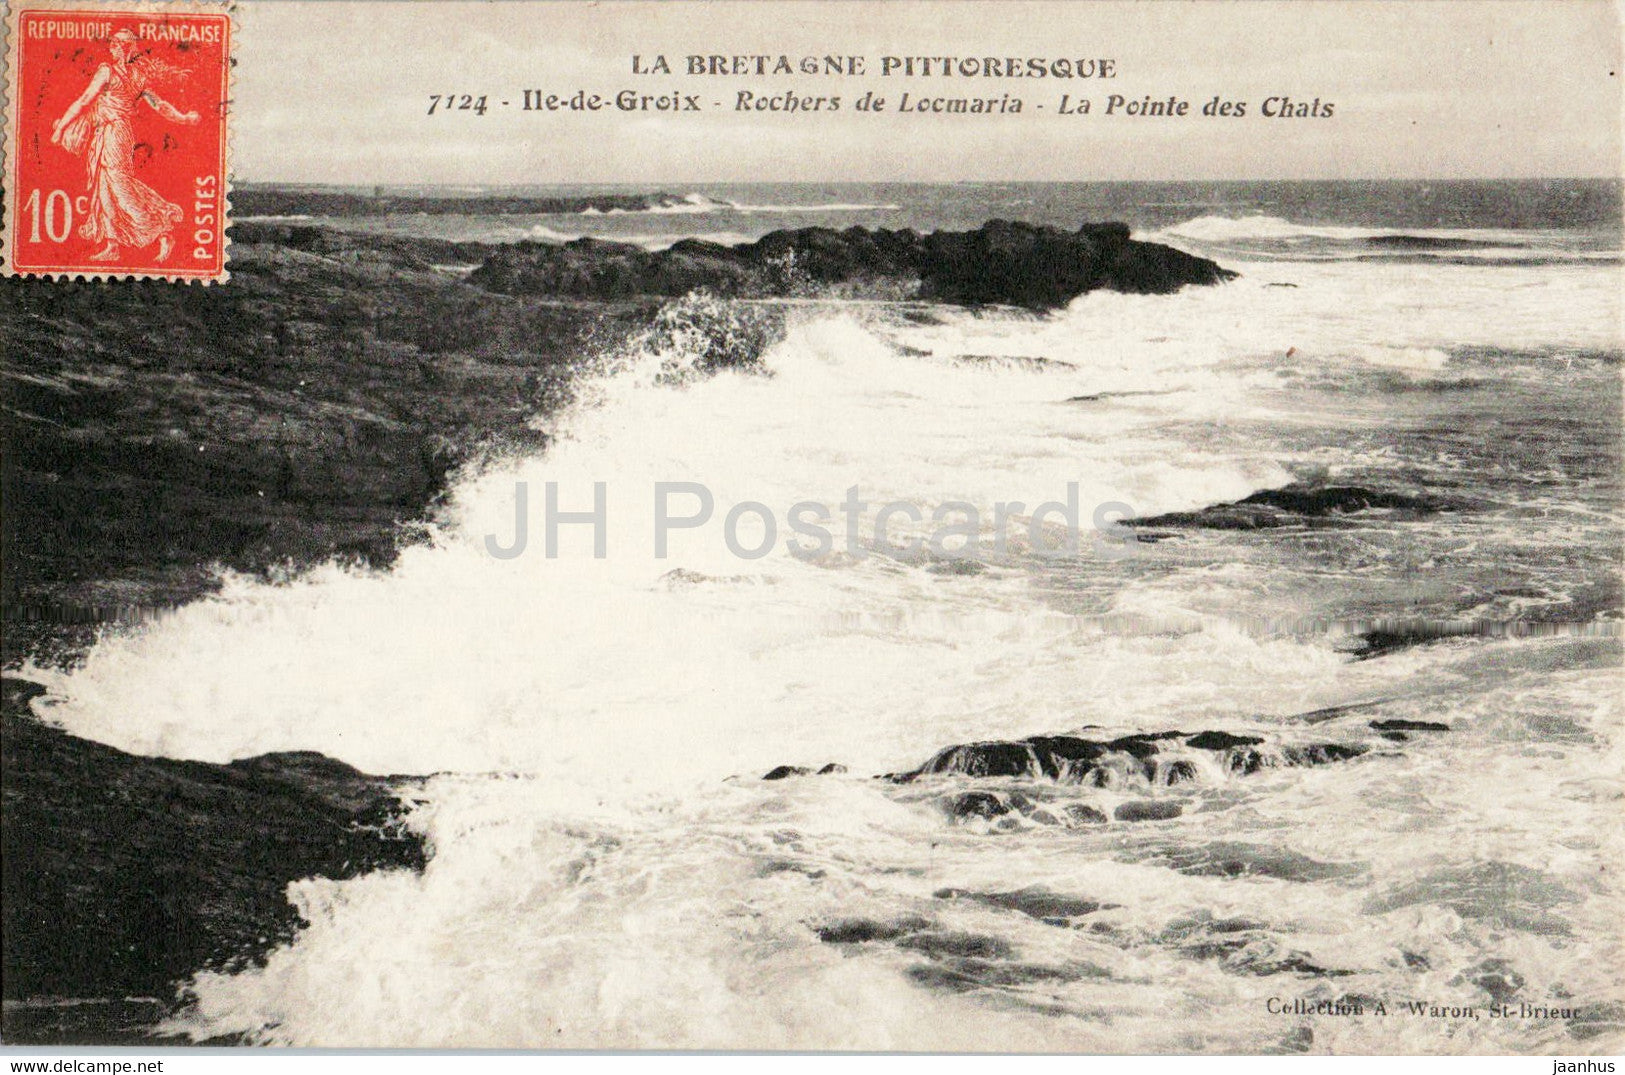 Ile de Groix - Rochers de Locmaria - La Pointe des Chats - 7124 - old postcard - France - used - JH Postcards